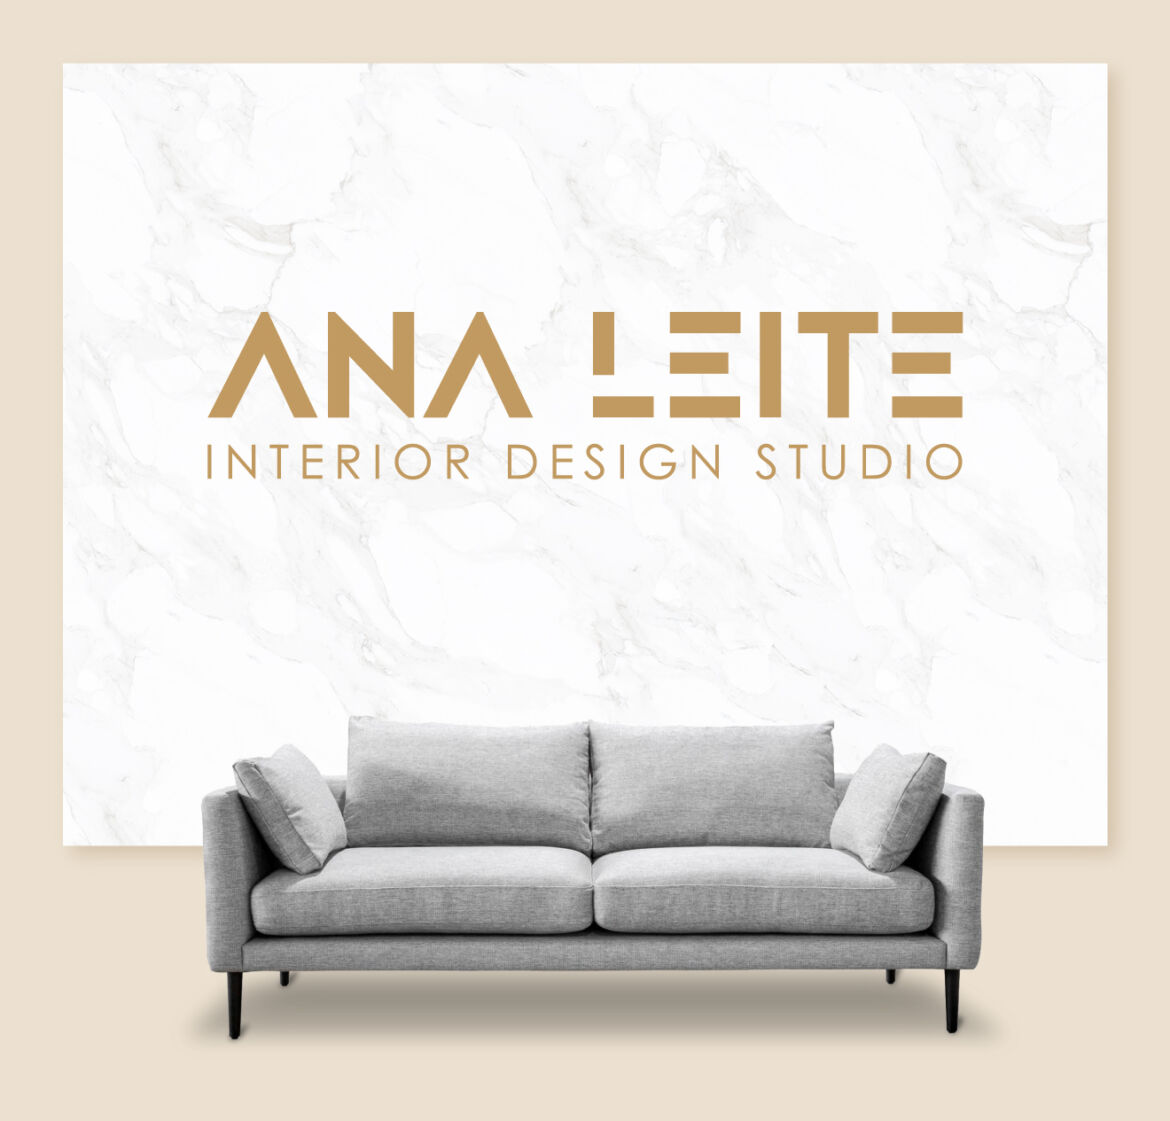 Ana Leite – Interior Design Studio